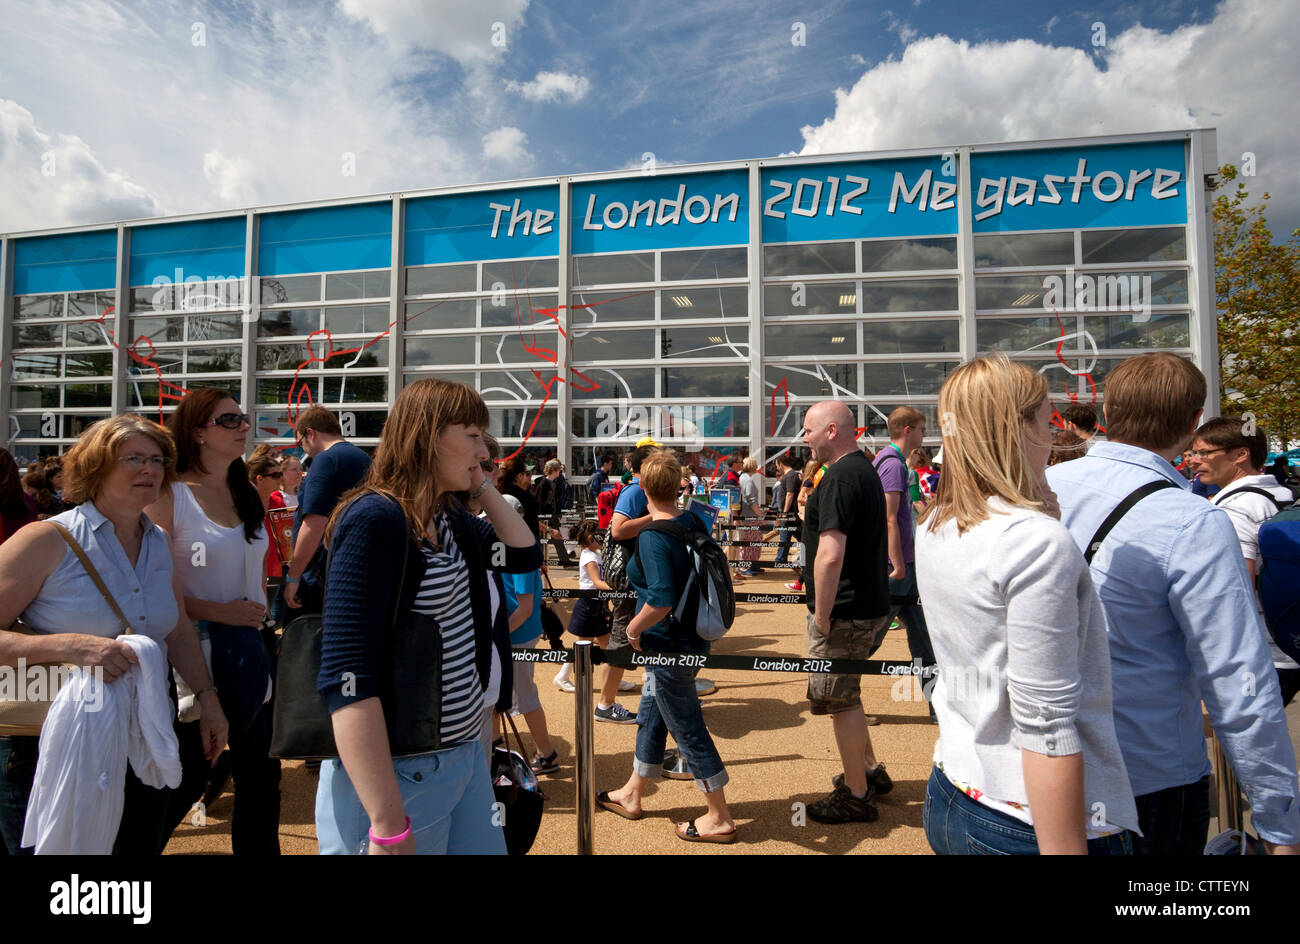 Les Jeux Olympiques de 2012 à Londres - les gens faisant la queue pour entrer dans Londres 2012 Megastore dans le Parc olympique Banque D'Images